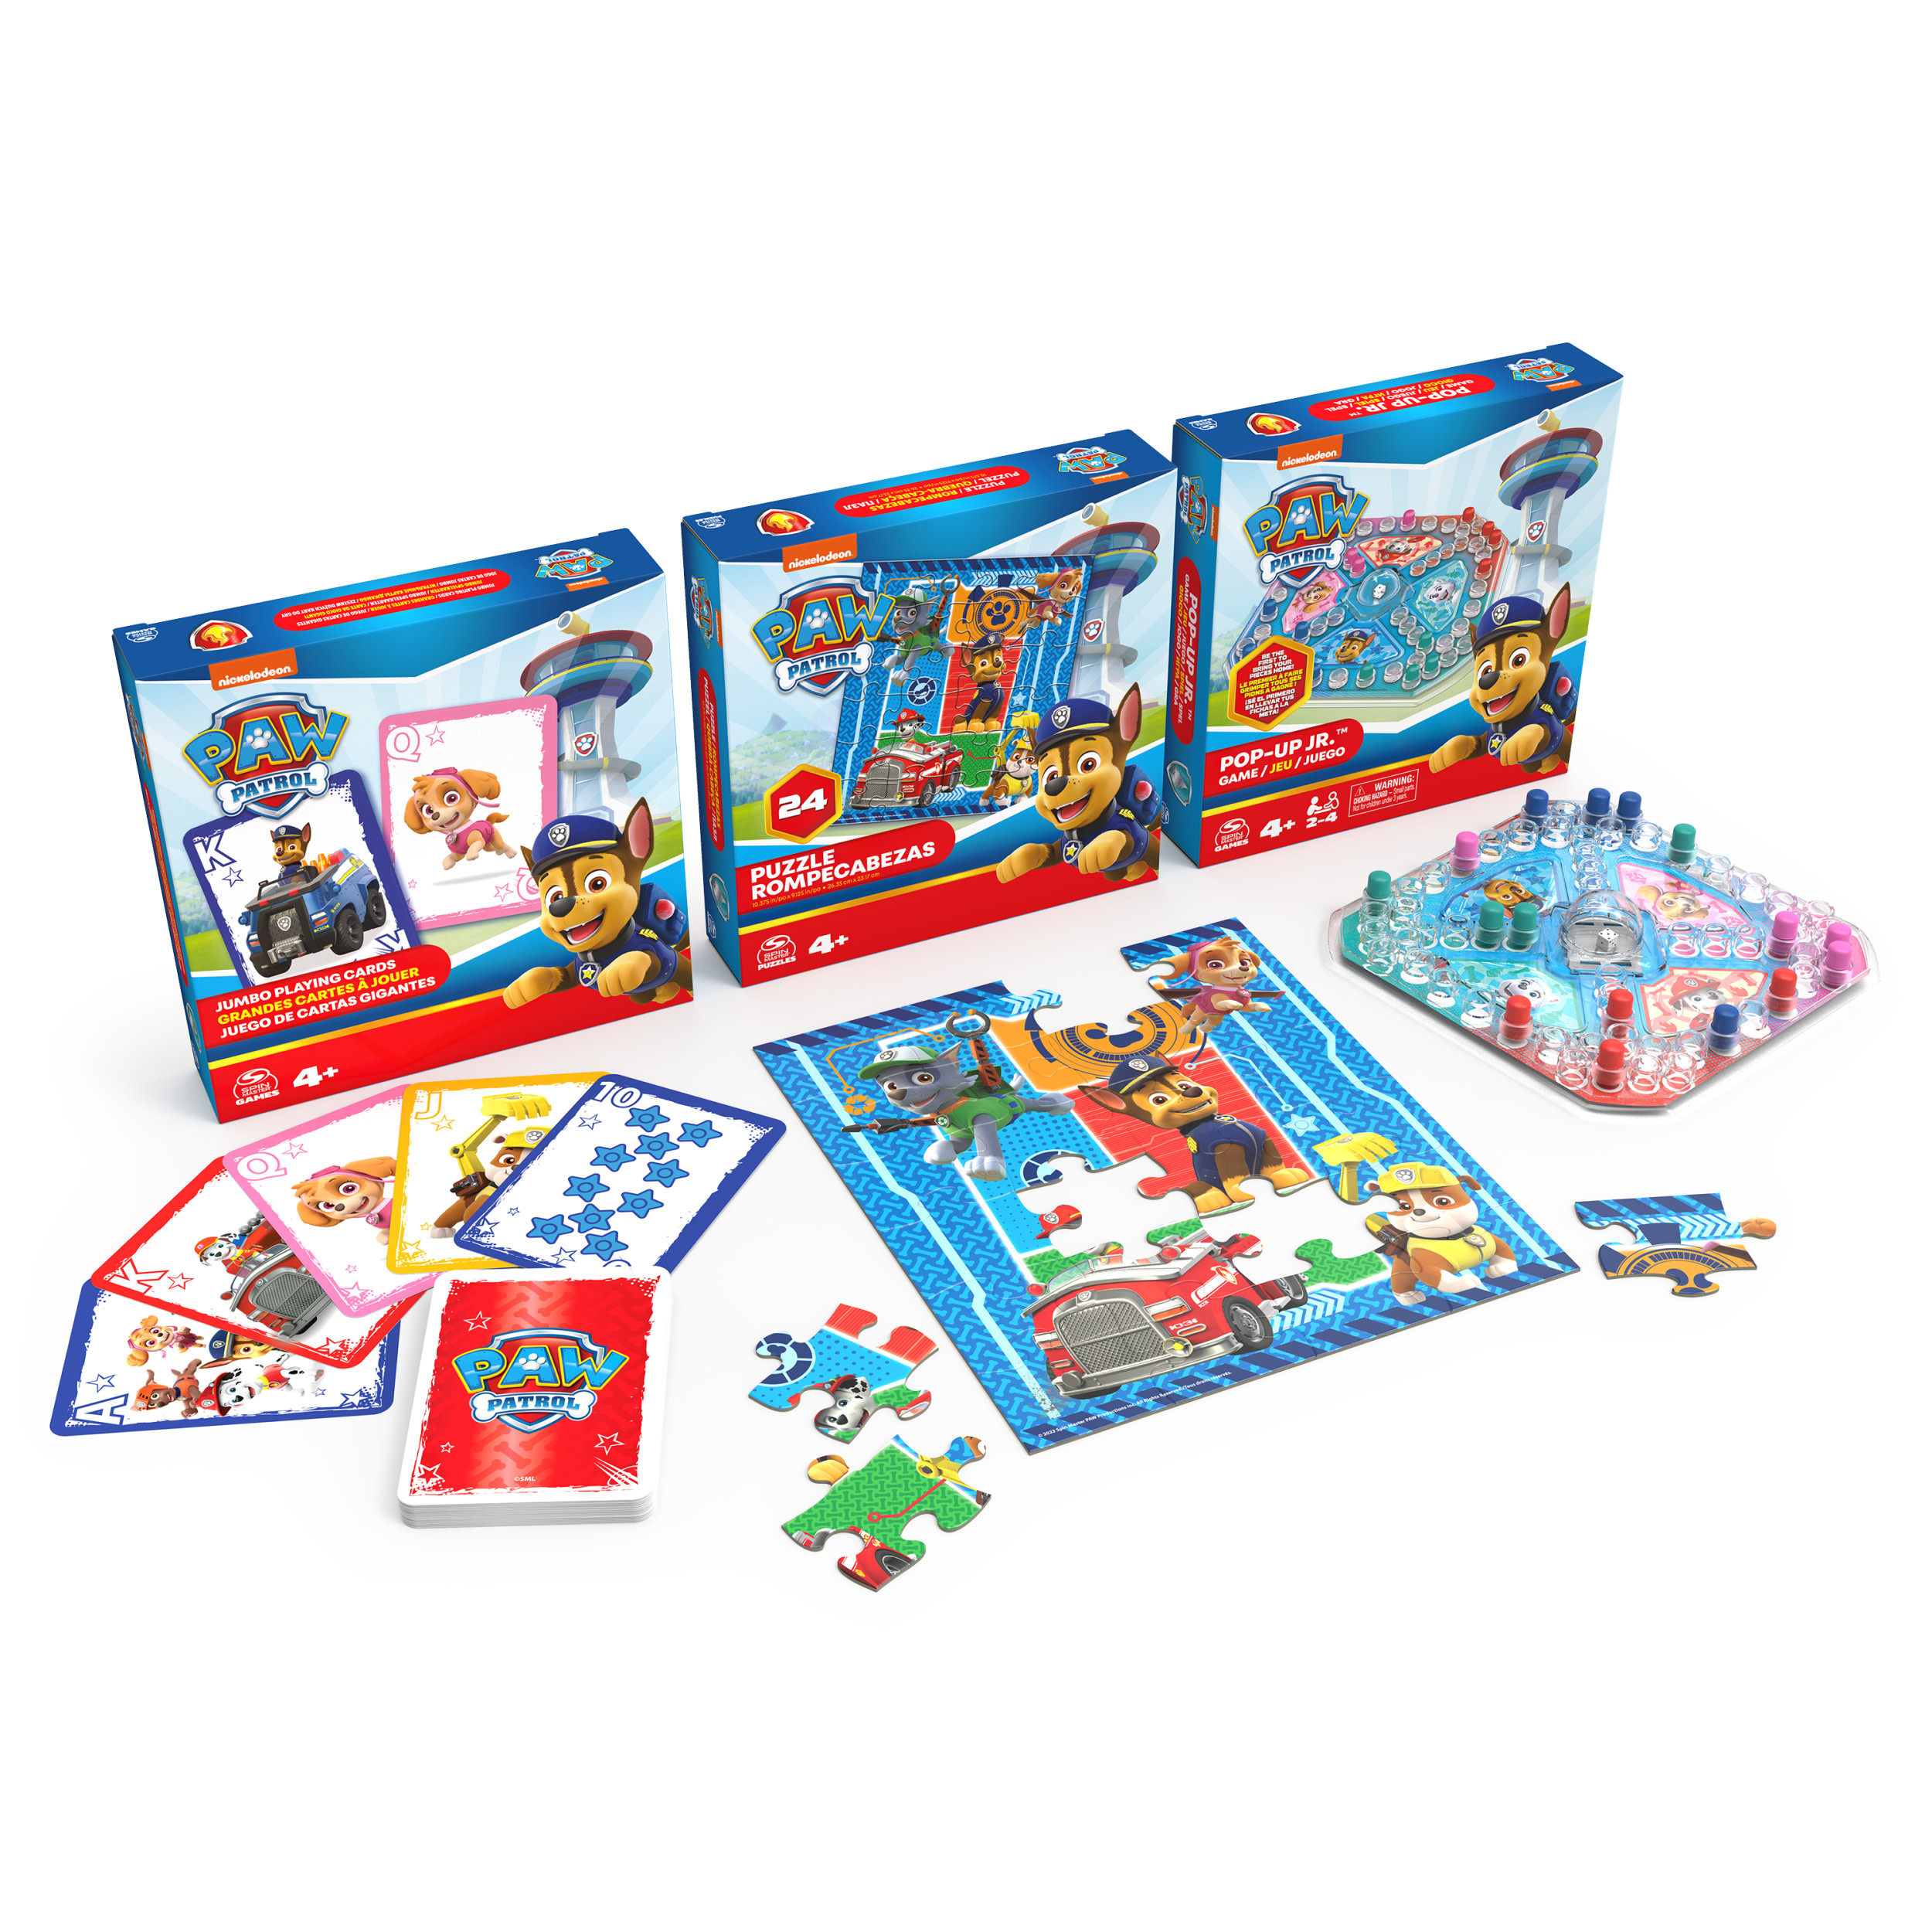 Spin Master PAW Patrol - Spelbundel met Jumbo kaarten - Pop-Up spel en 24-delige puzzel